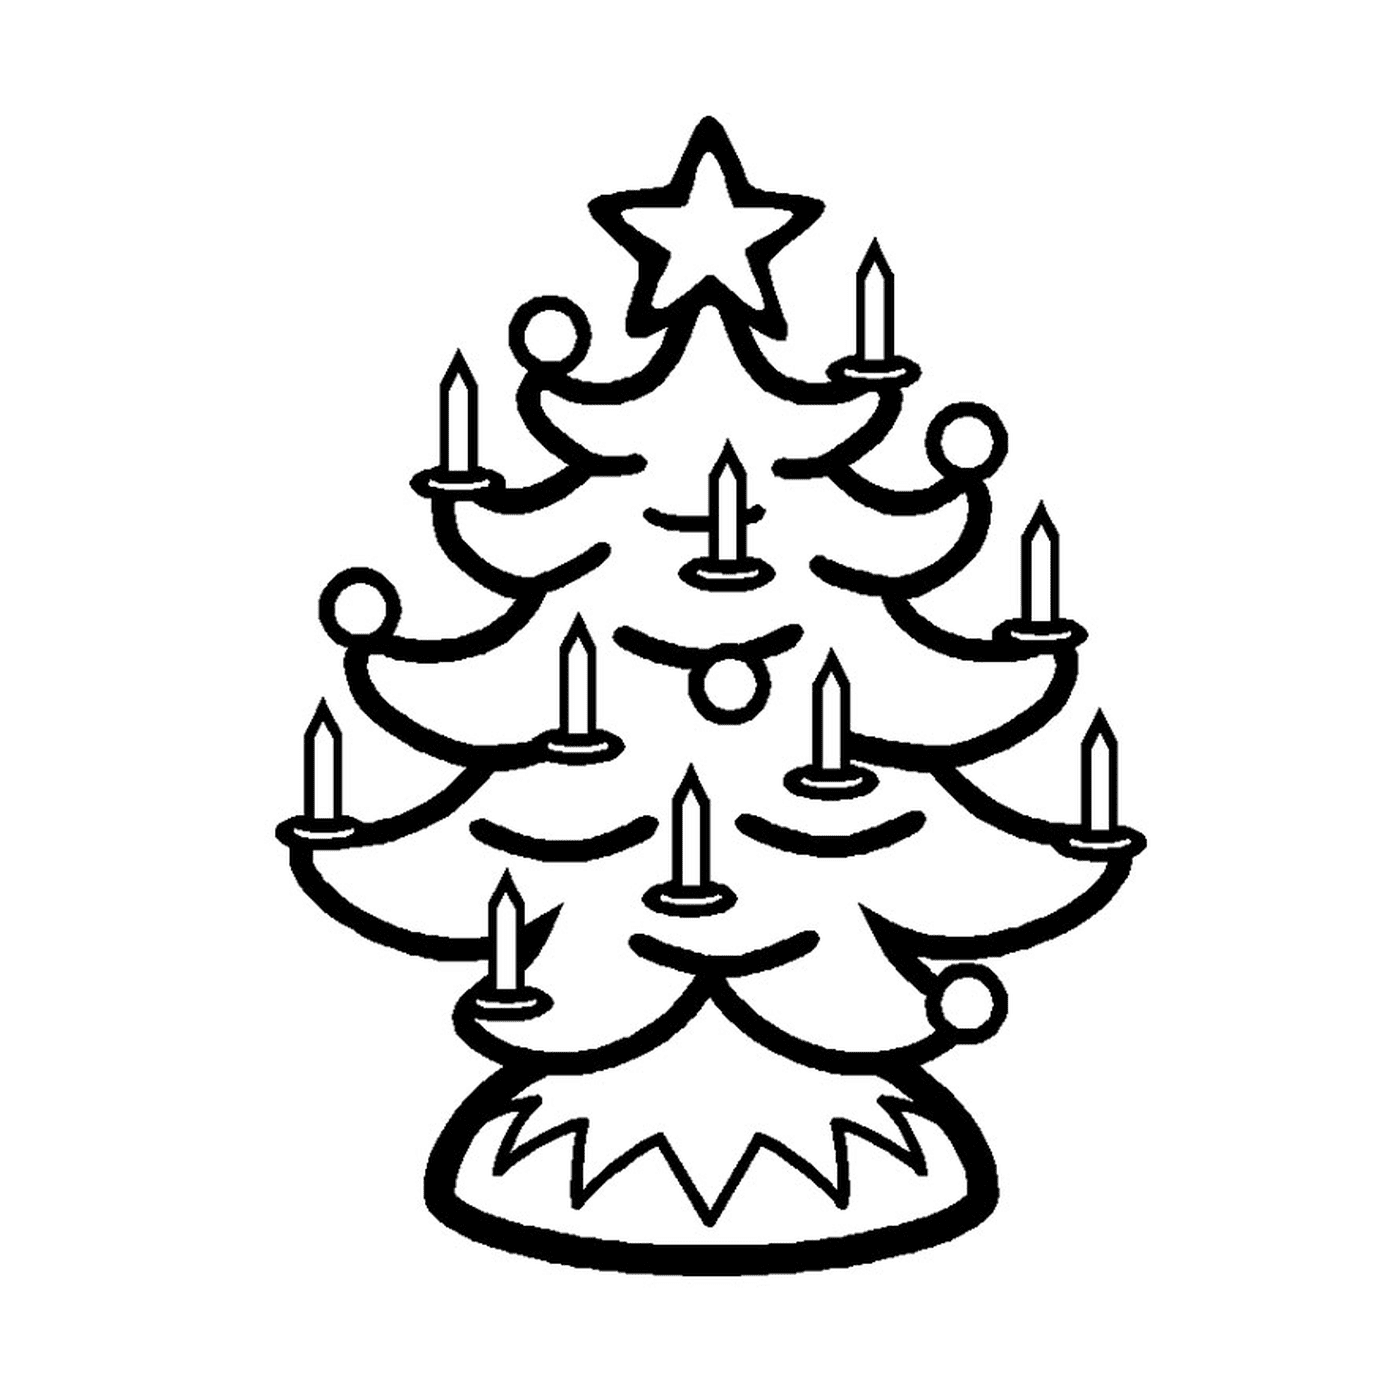  मोमबज के साथ क्रिसमस के पेड़ 